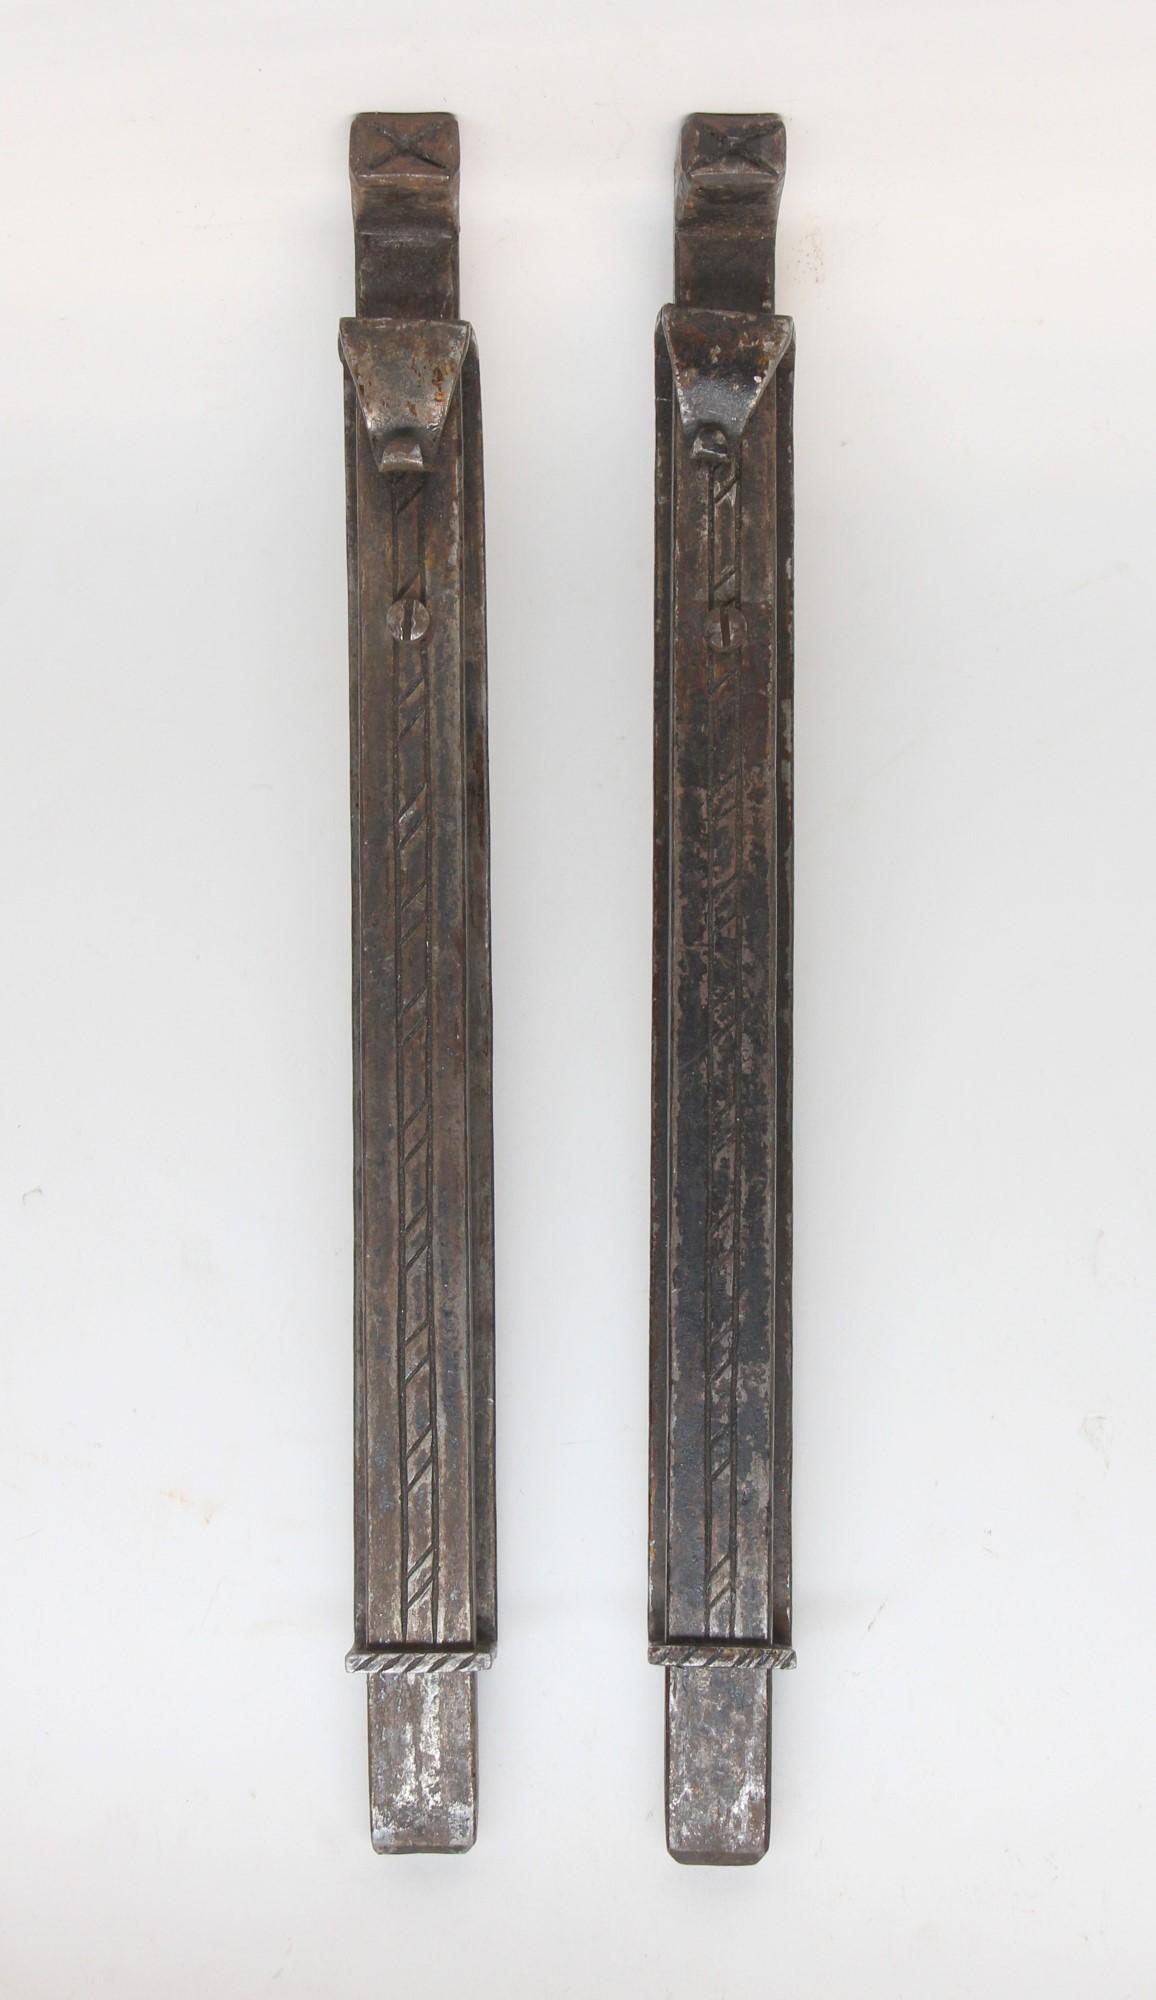 Schieberiegel aus dem frühen 20. Jahrhundert für Tore oder Türen. Diese Gleitbolzen sind aus handgeschmiedetem Eisen und werden Samuel Yellin zugeschrieben. Sie sind unsigniert. Der Preis gilt für ein Paar. Bitte beachten Sie, dieser Artikel